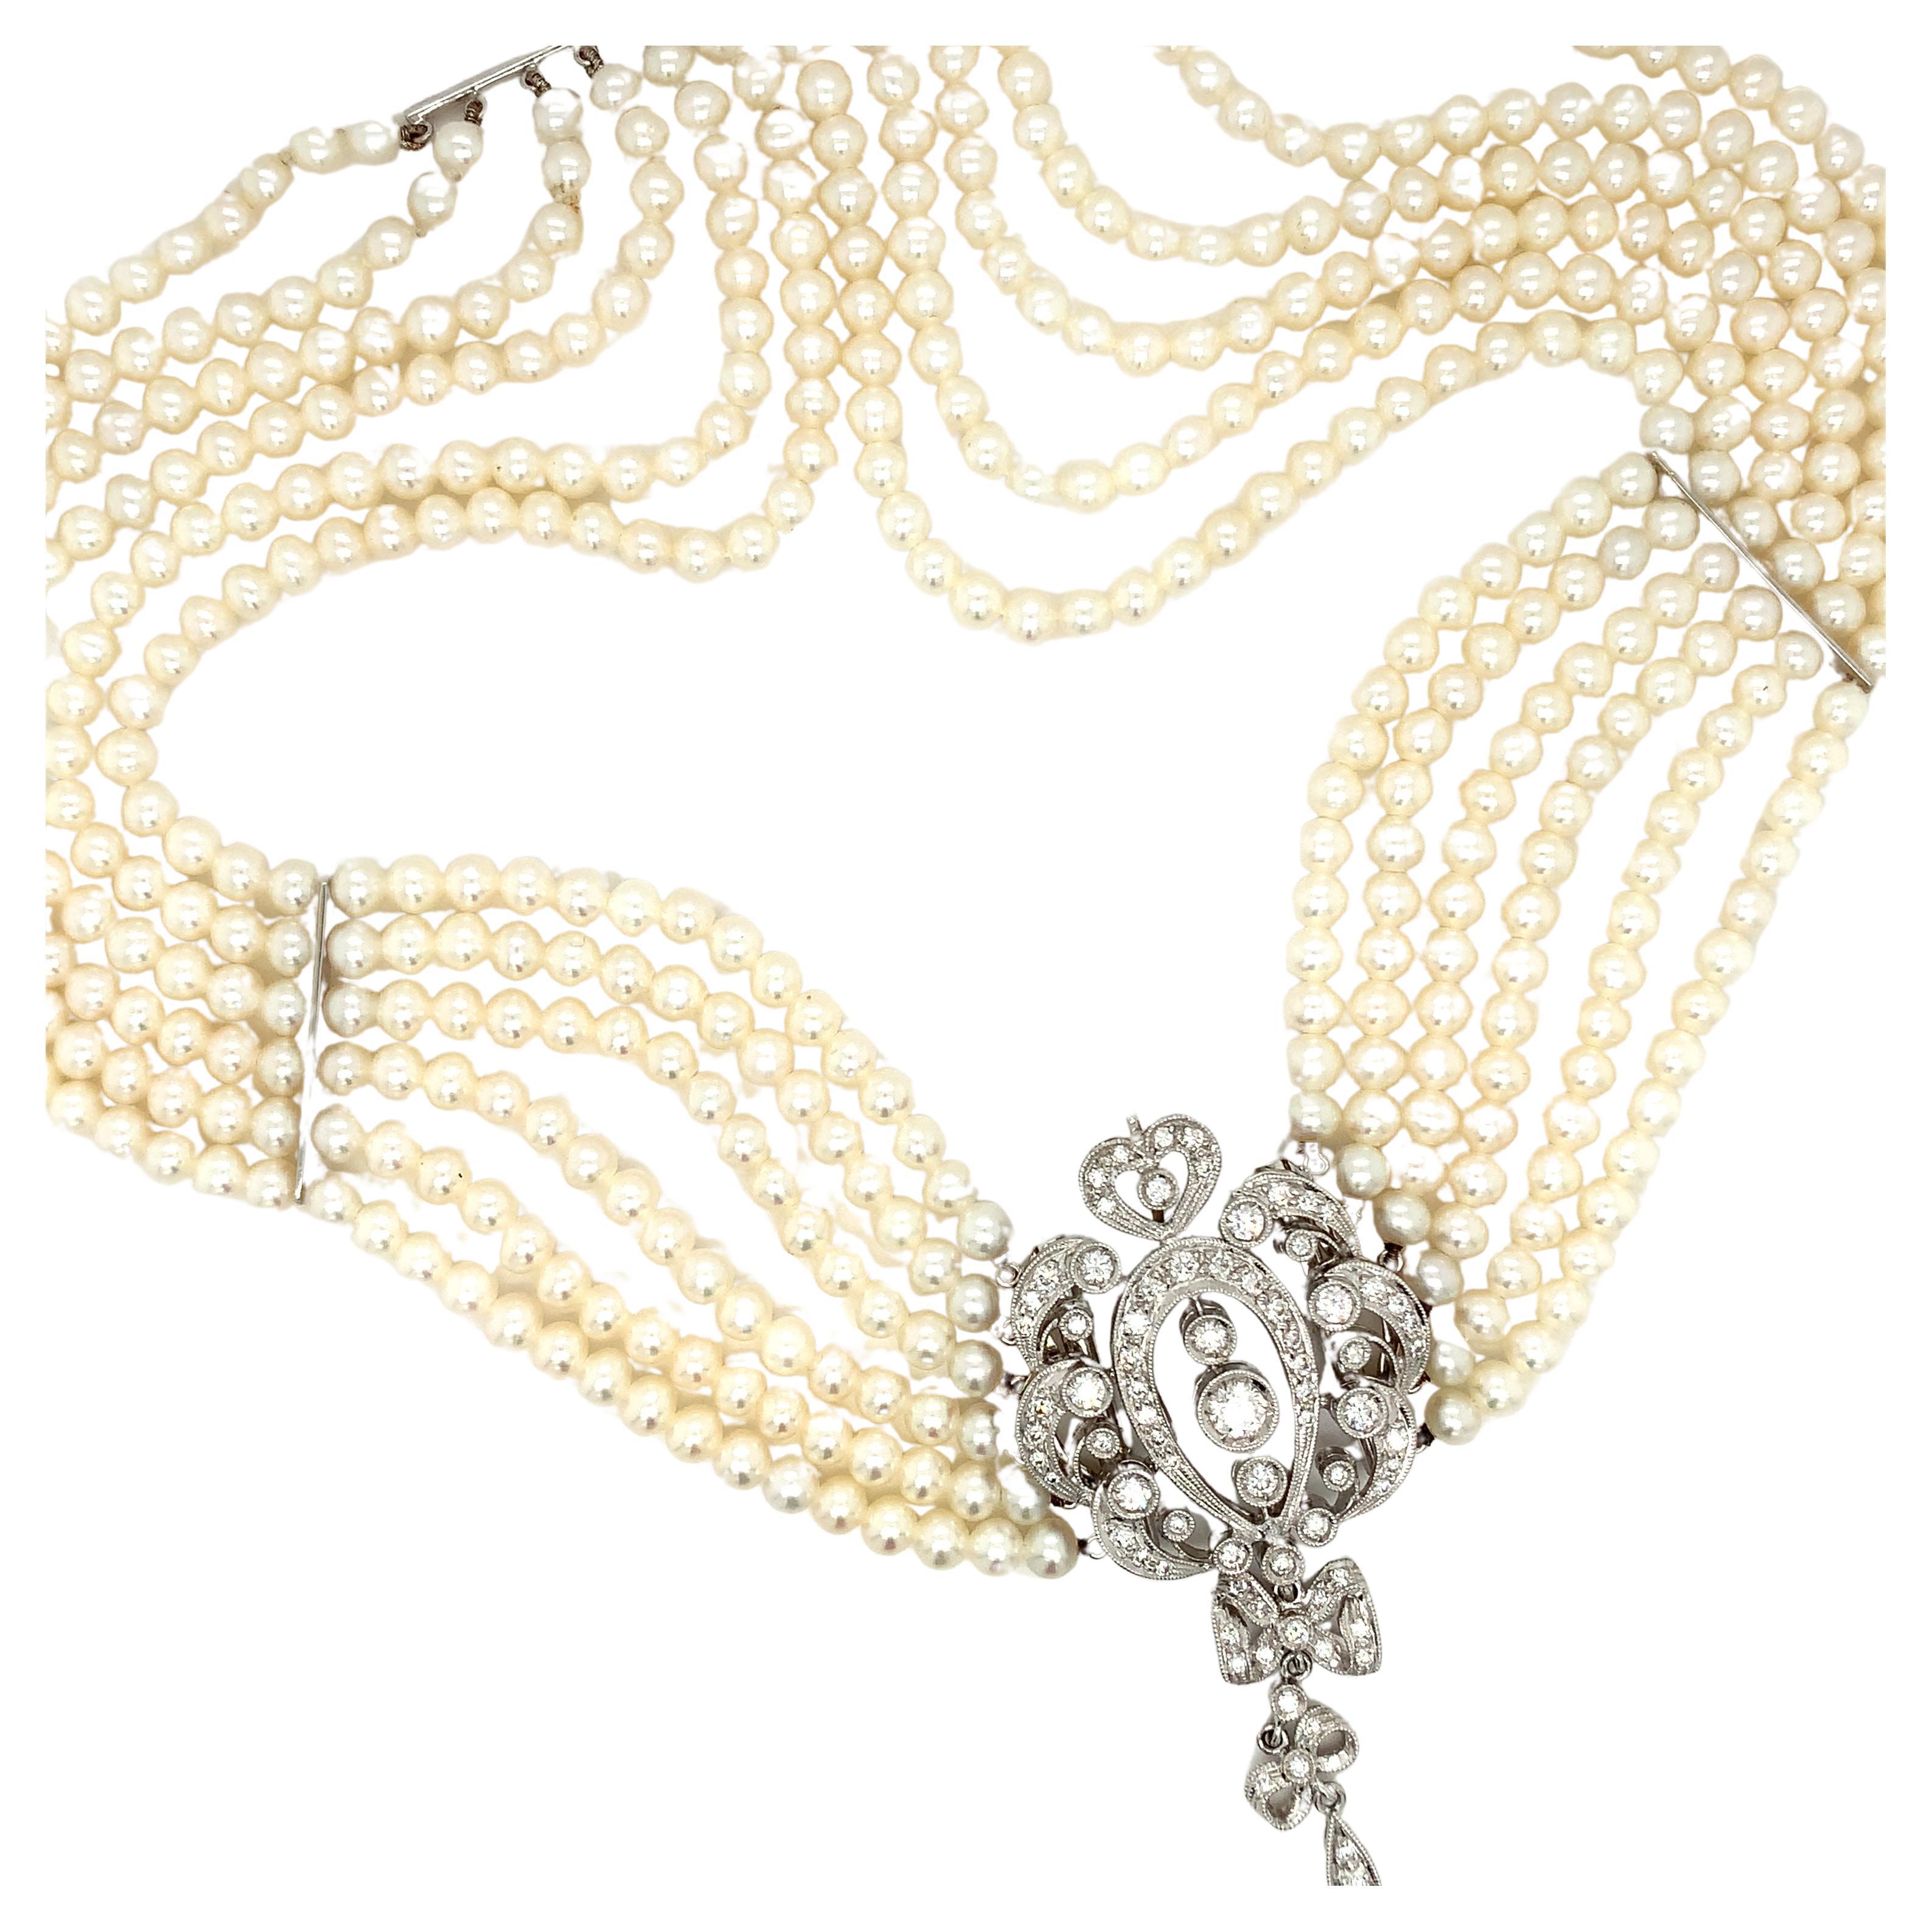 Halskette mit Diamanten und Perlen im Art-Deco-Stil aus 18 Karat Weißgold